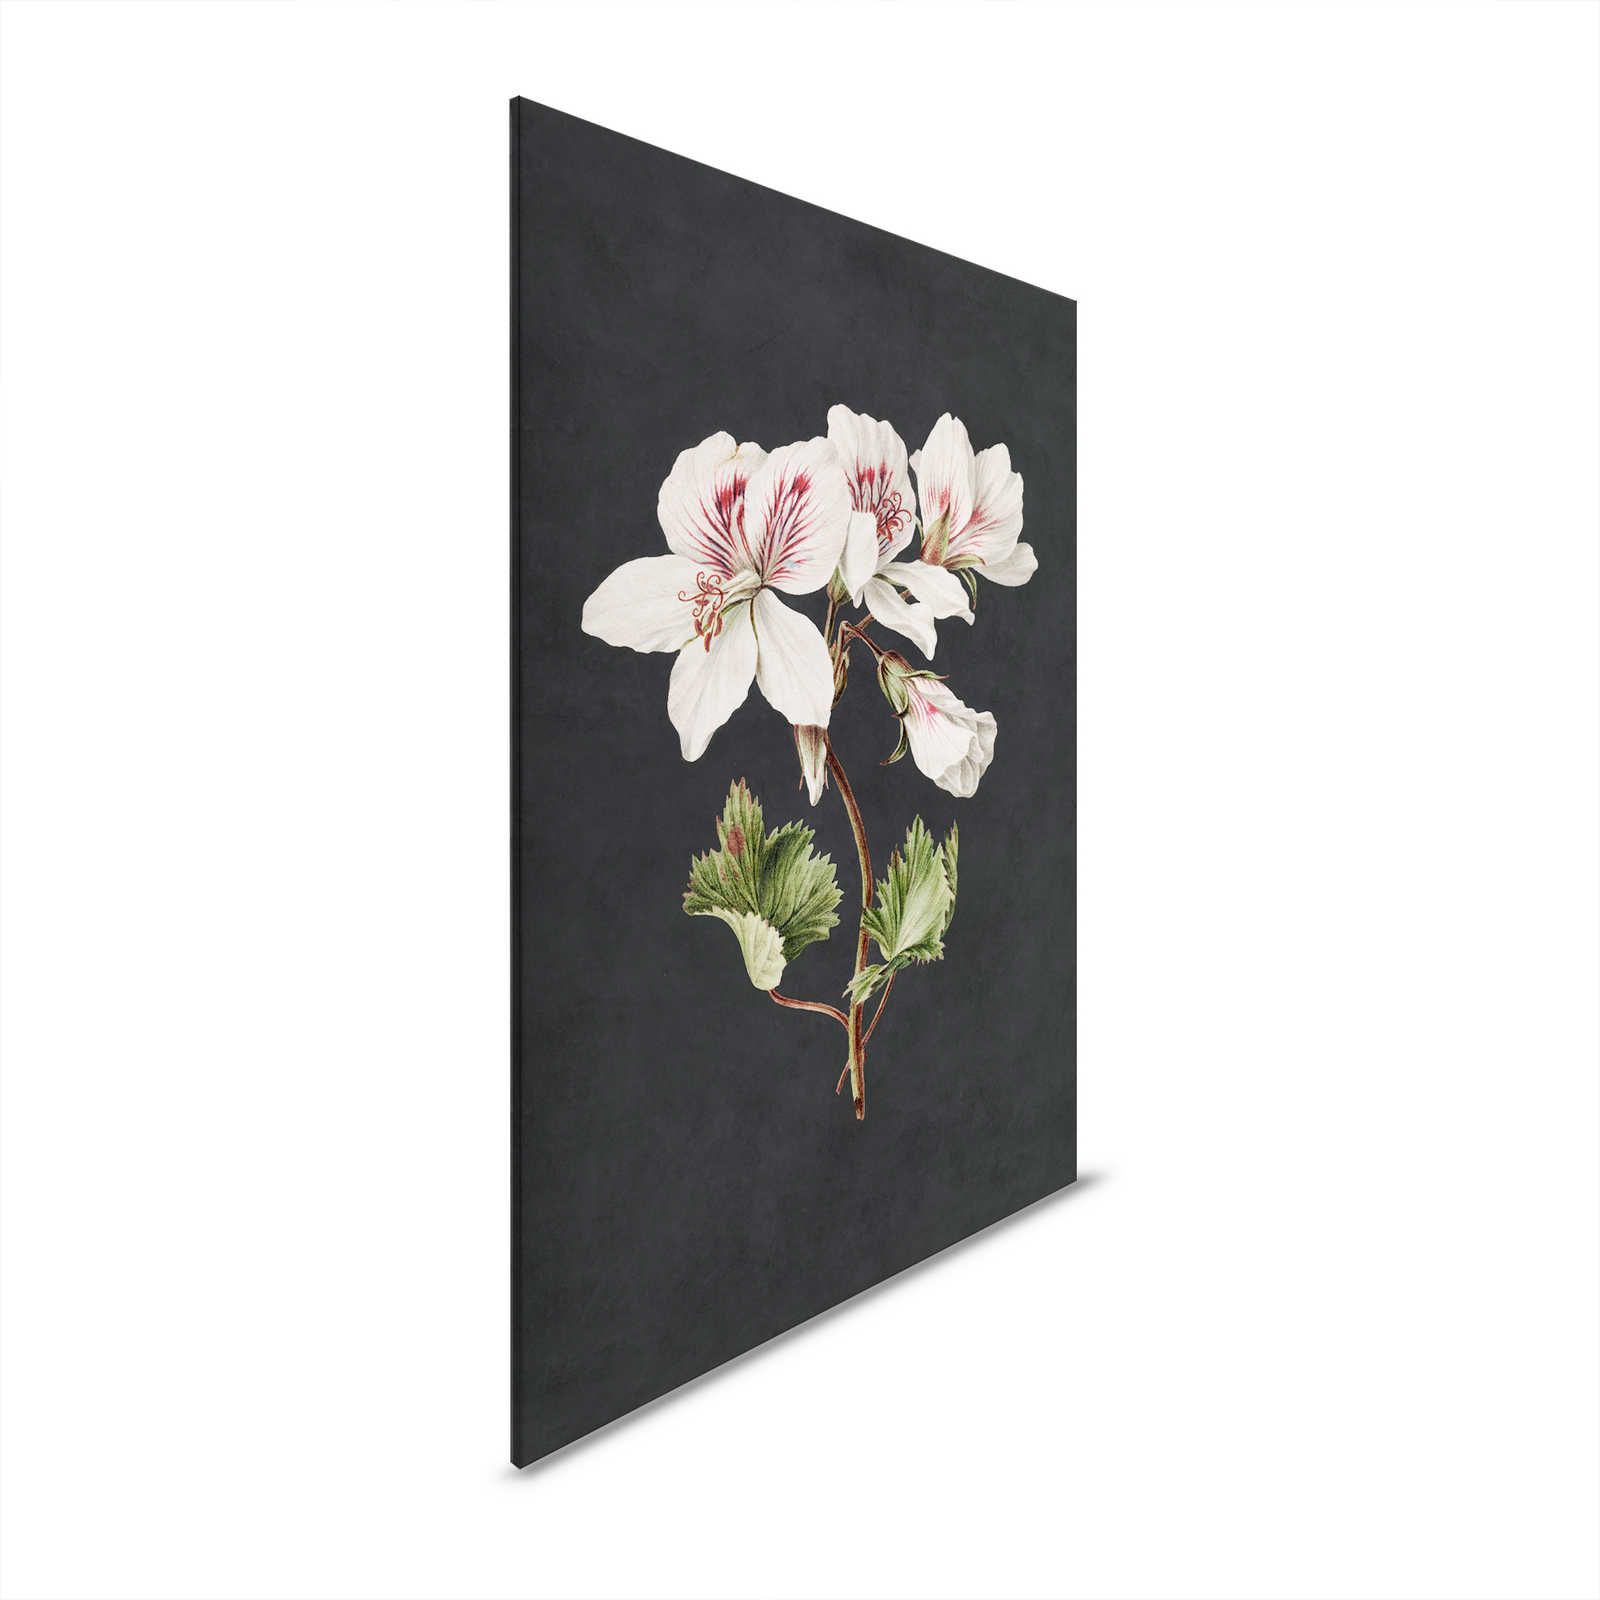 Midnight Garden 1 - Schwarzes Leinwandbild Lilie Blüte im Gemälde Stil – 0,60 m x 0,90 m
